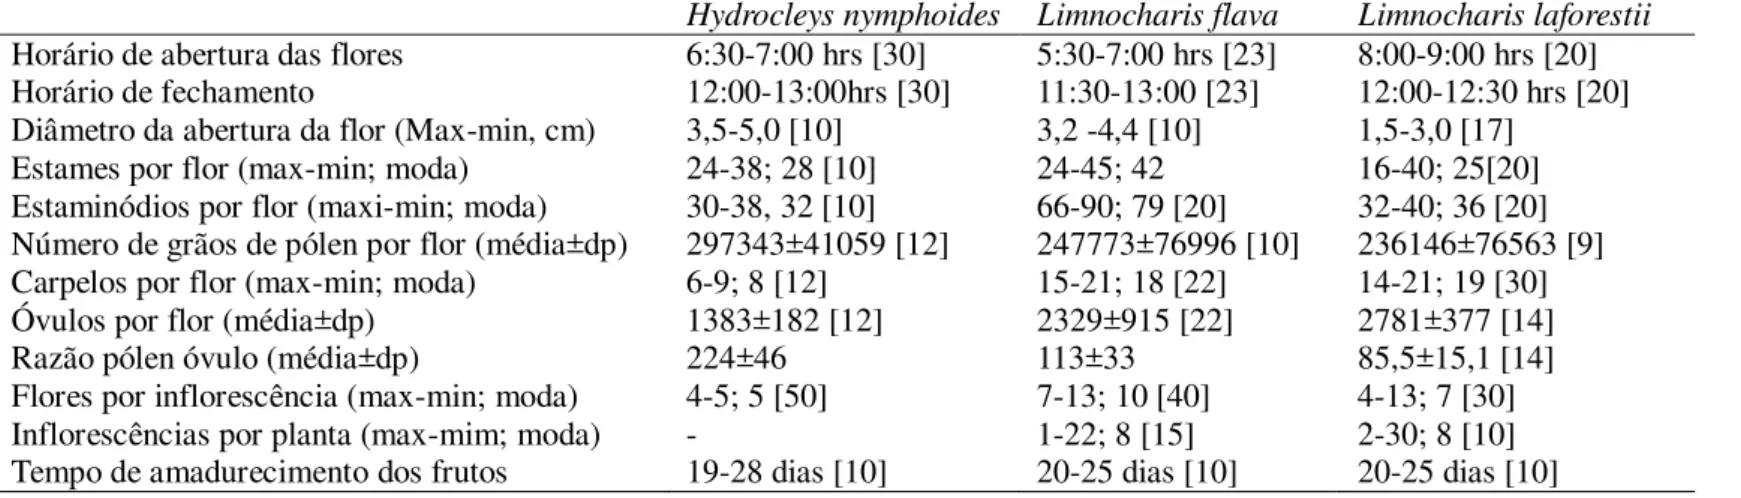 Tabela 1: Características da biologia floral, duração de antese, medidas florais, quantificação de estames e estaminódios, grãos de pólen, óvulos e carpelos  de Hydrocleys nymphoides, Limnocharis flava e L